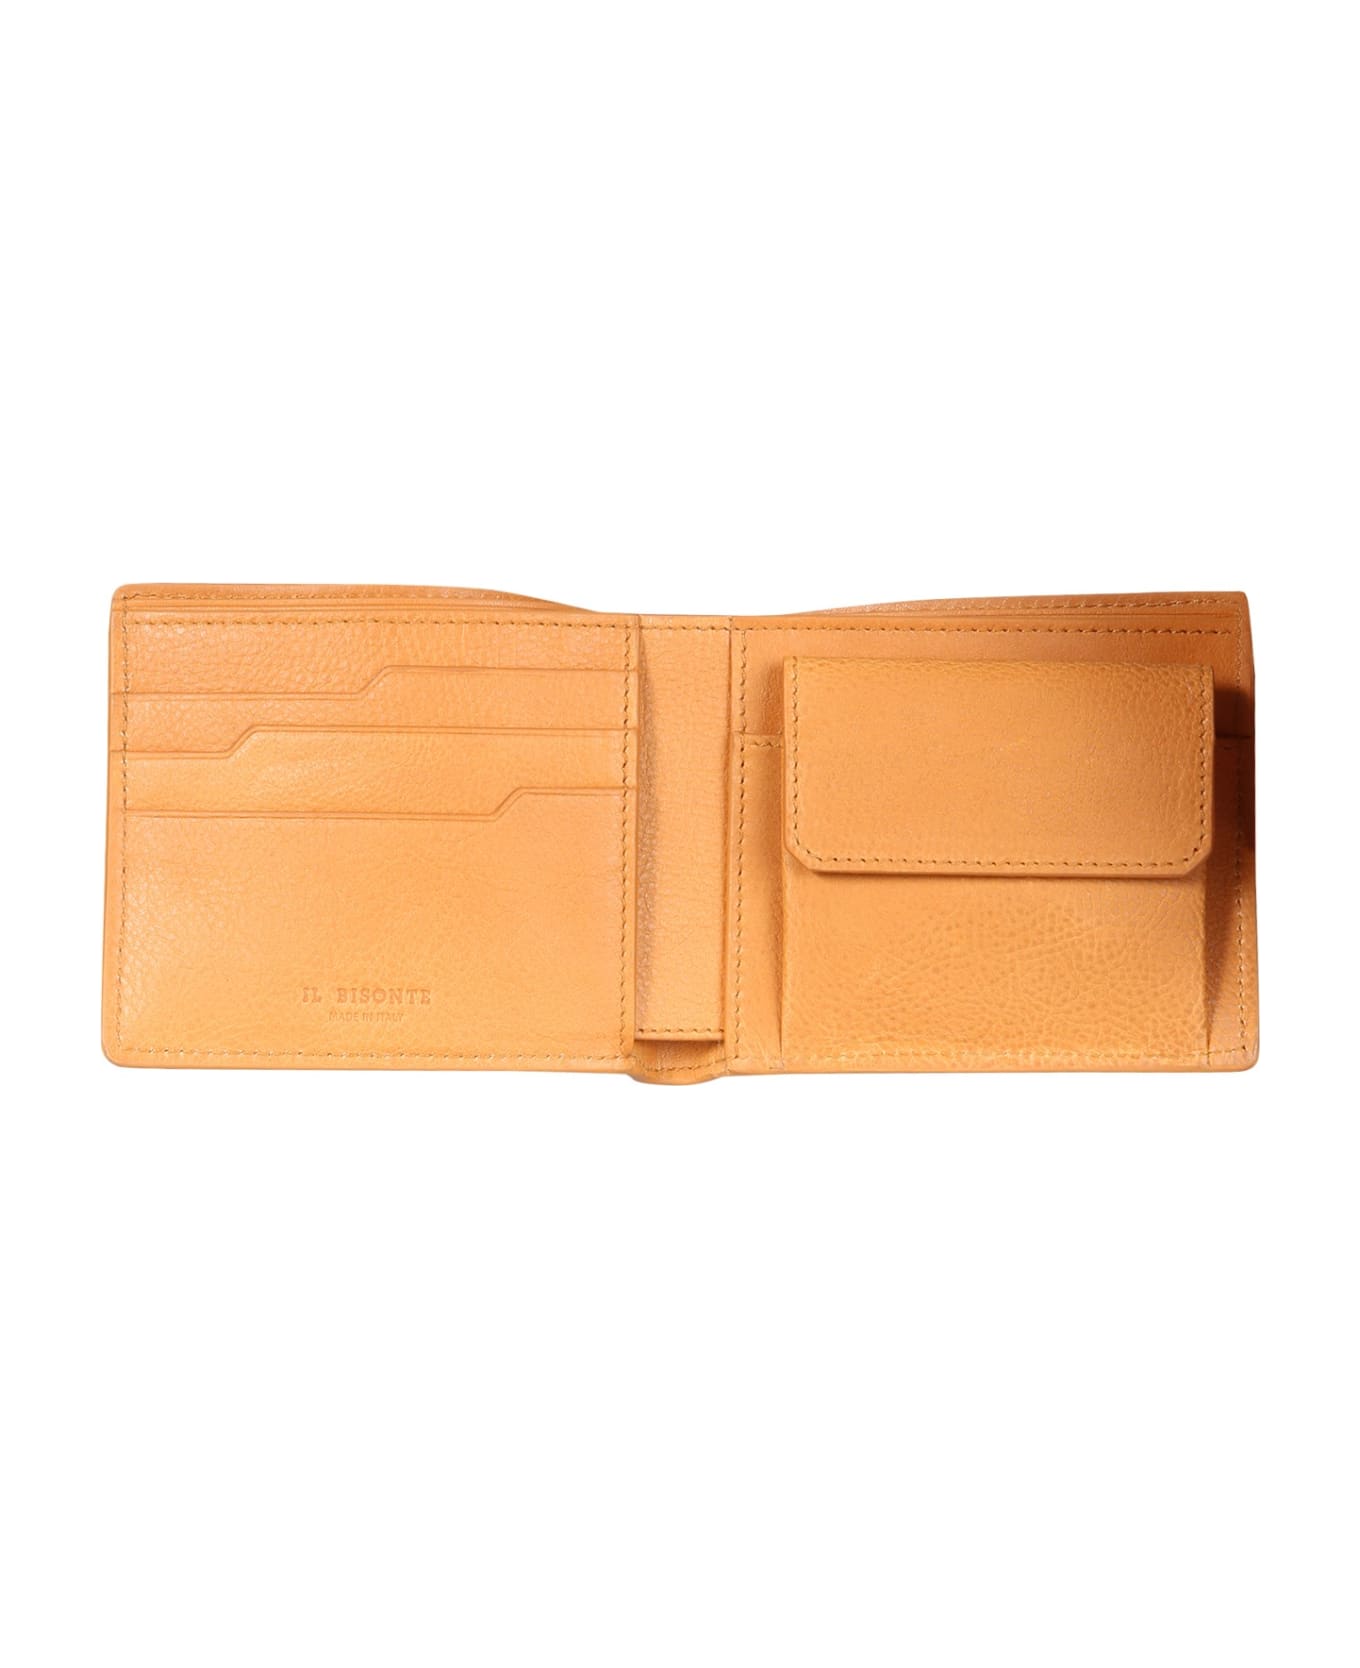 Il Bisonte Leather Bifold Wallet - BEIGE